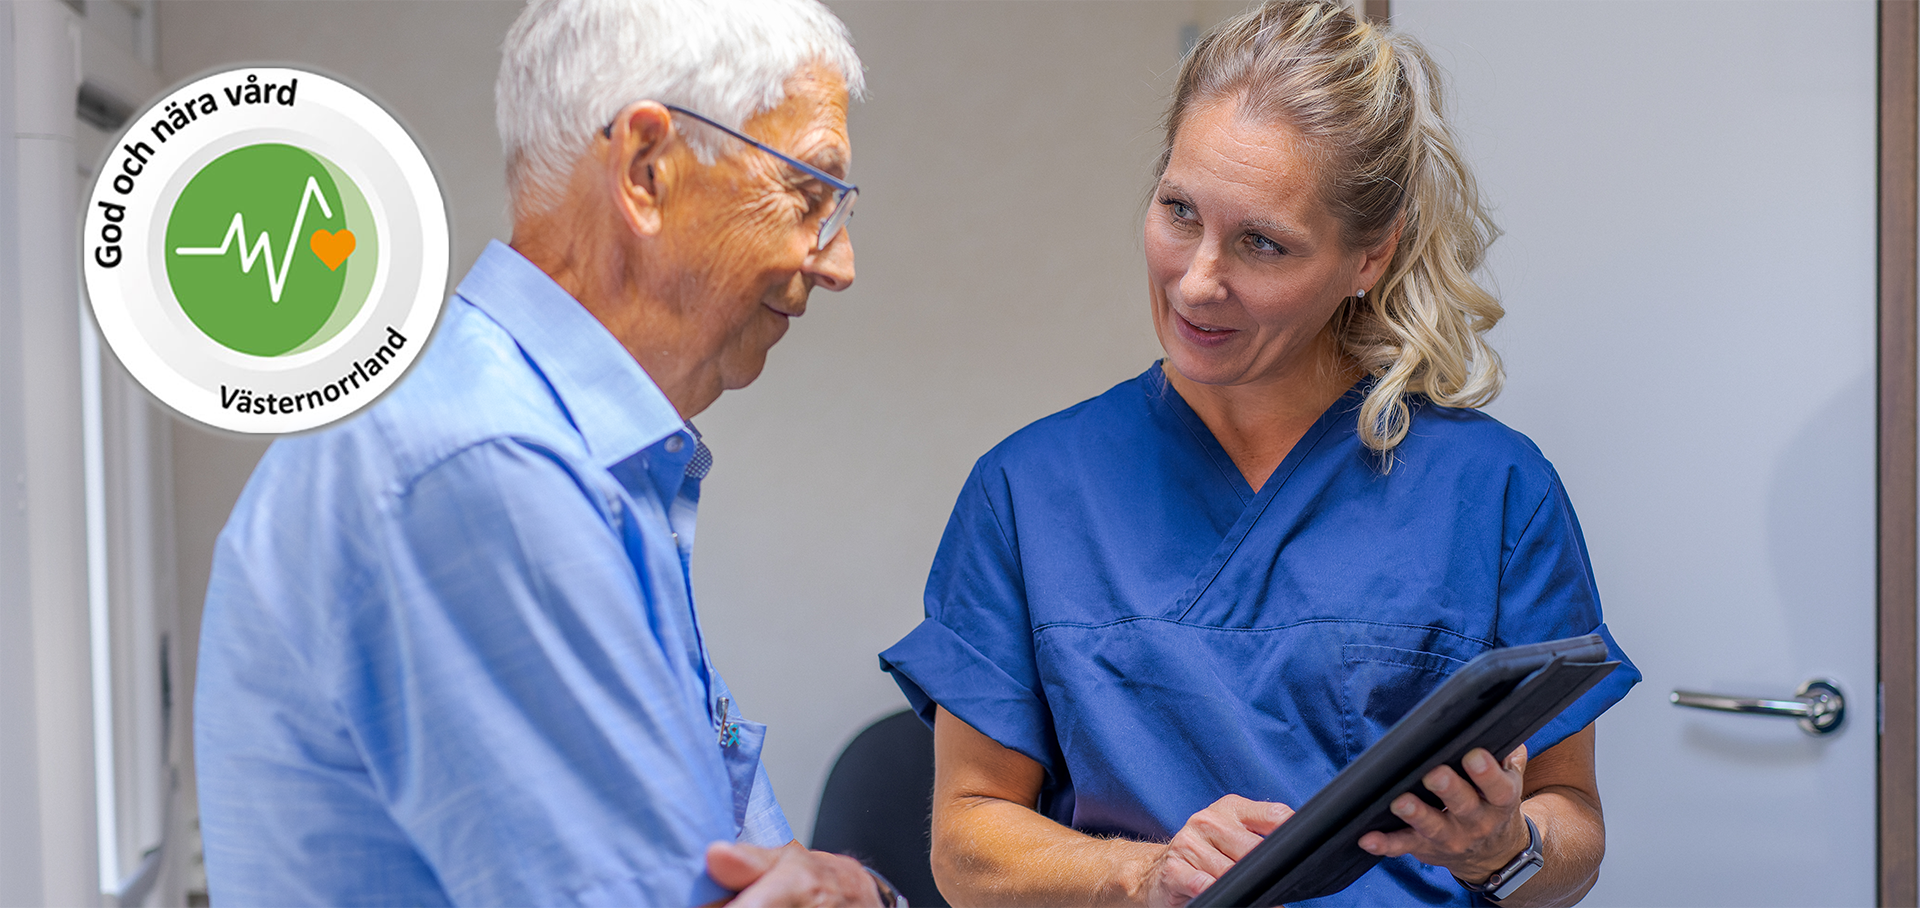 God och nära vård-symbolen ligger på ett foto föreställandes en äldre man som pratar med en kvinnlig sjuksköterska